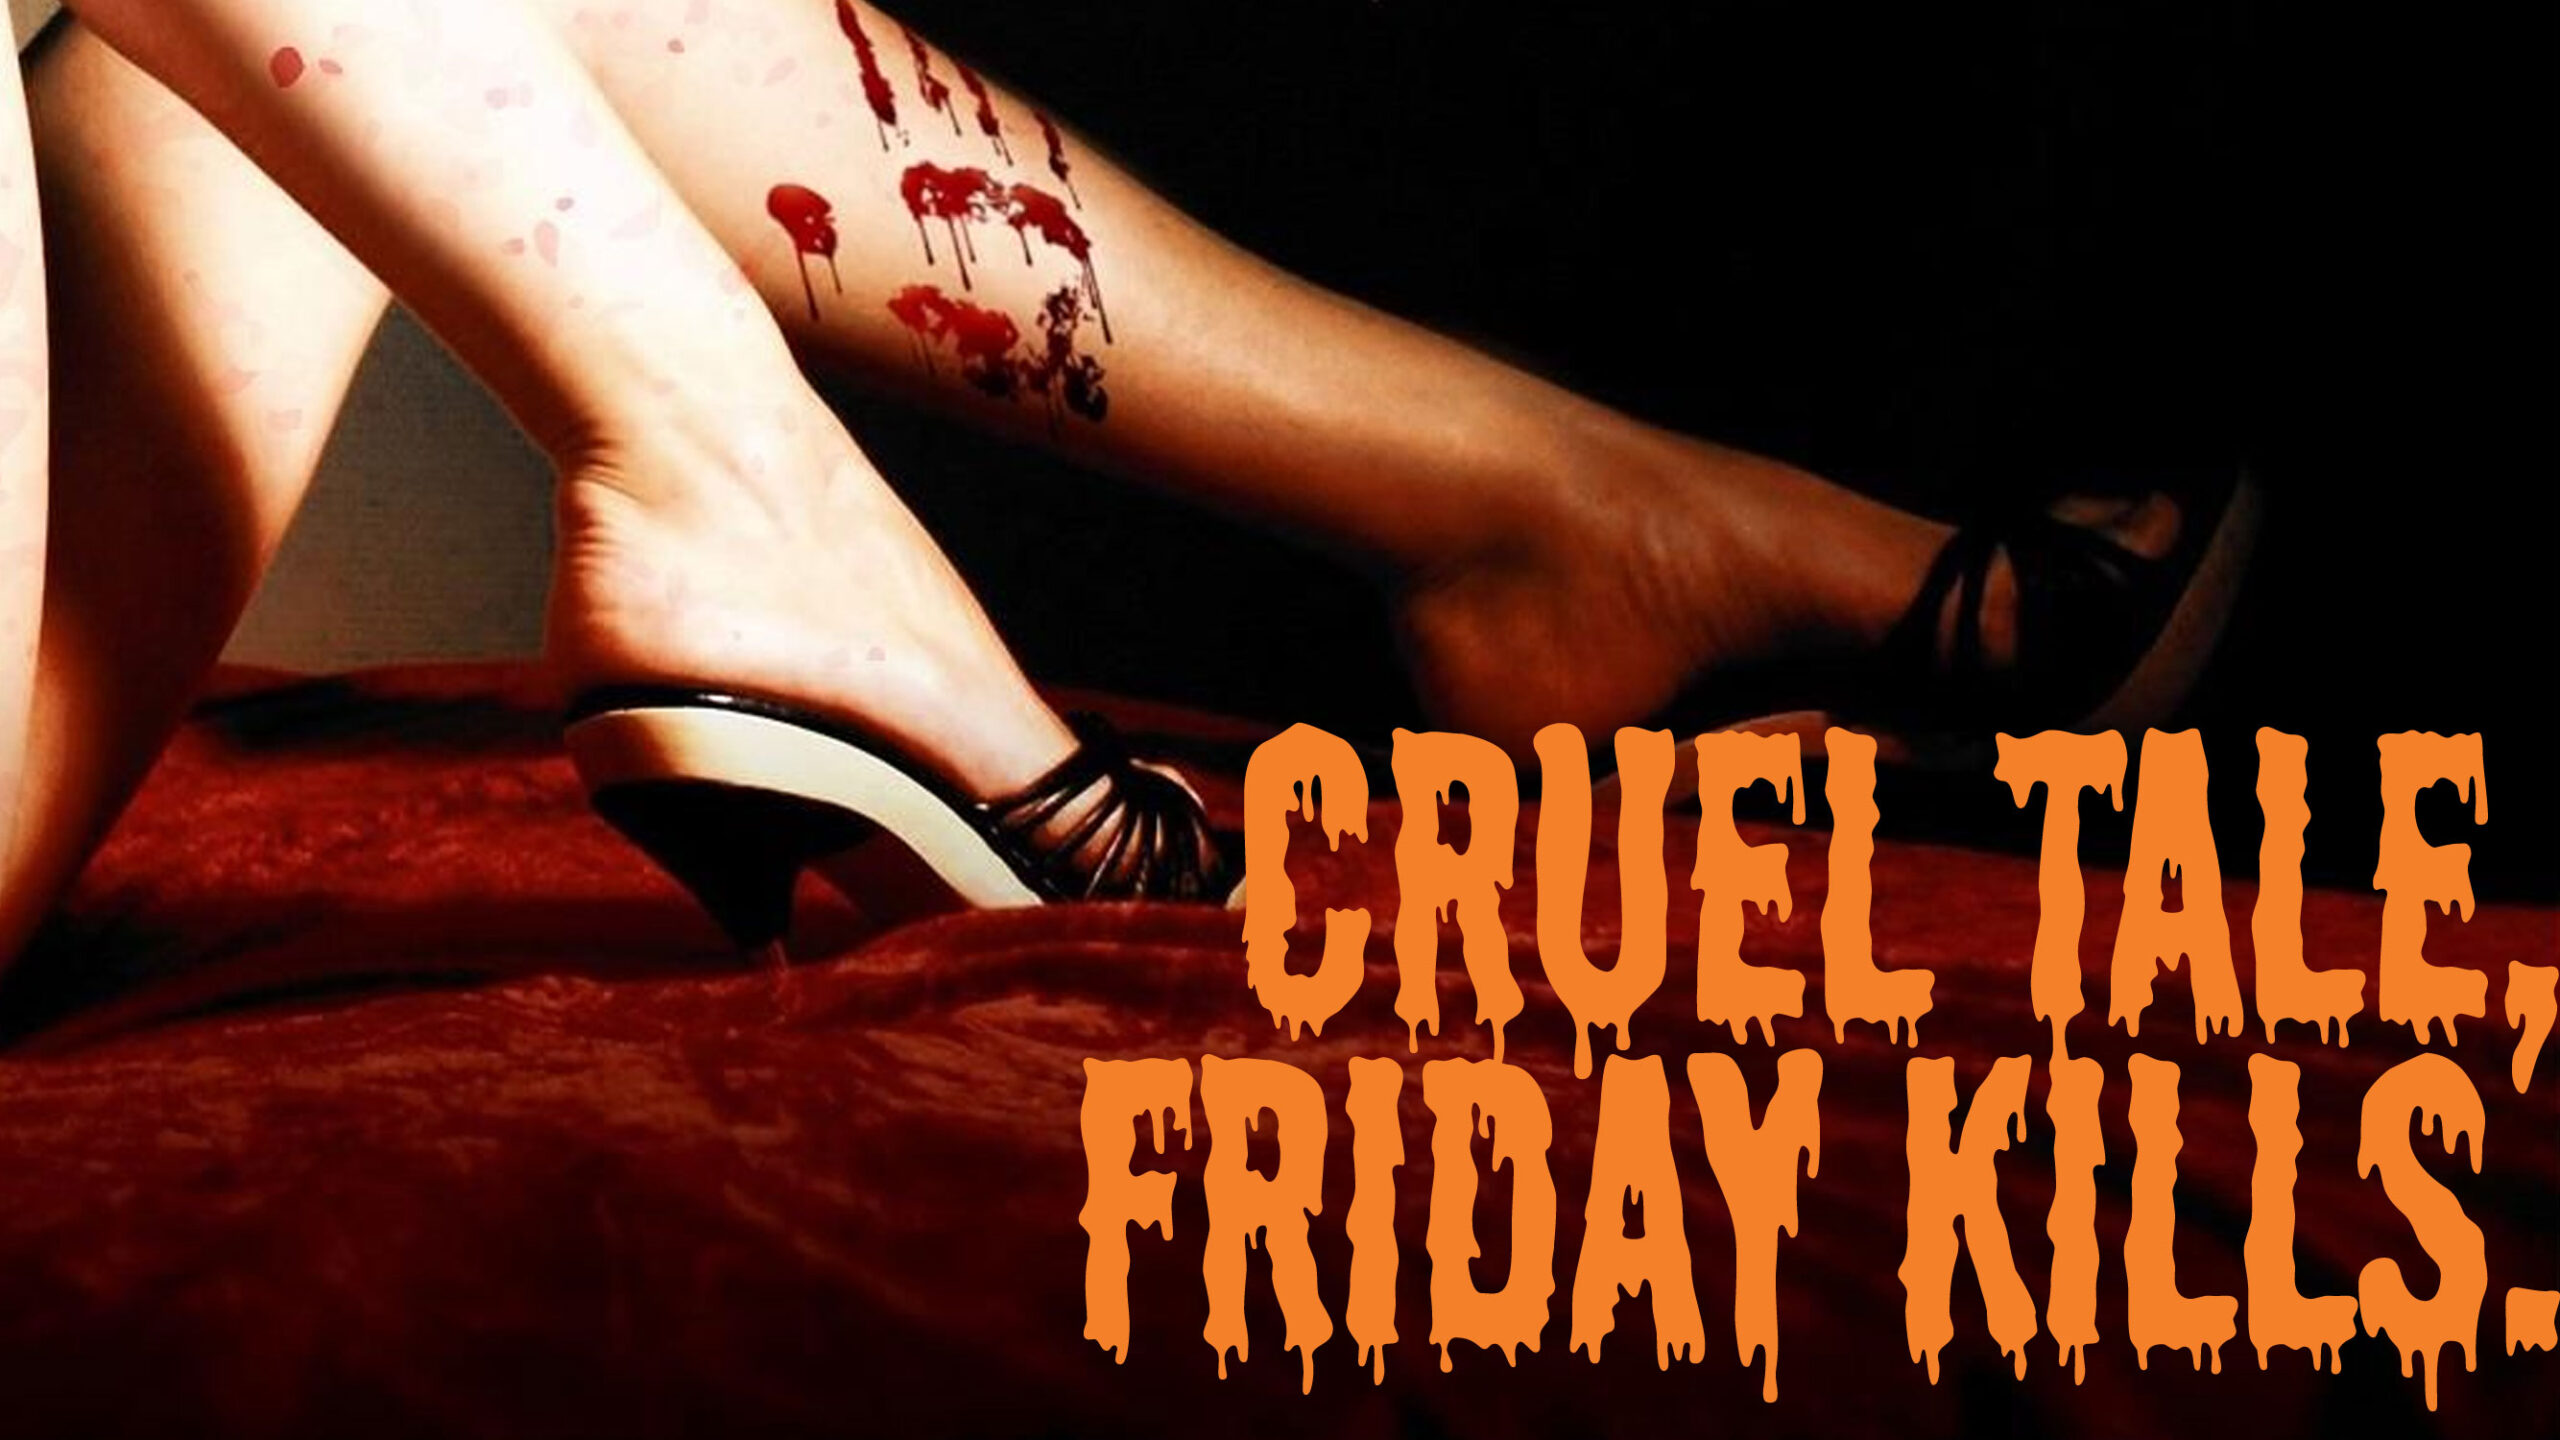 Cruel tale, Friday kills